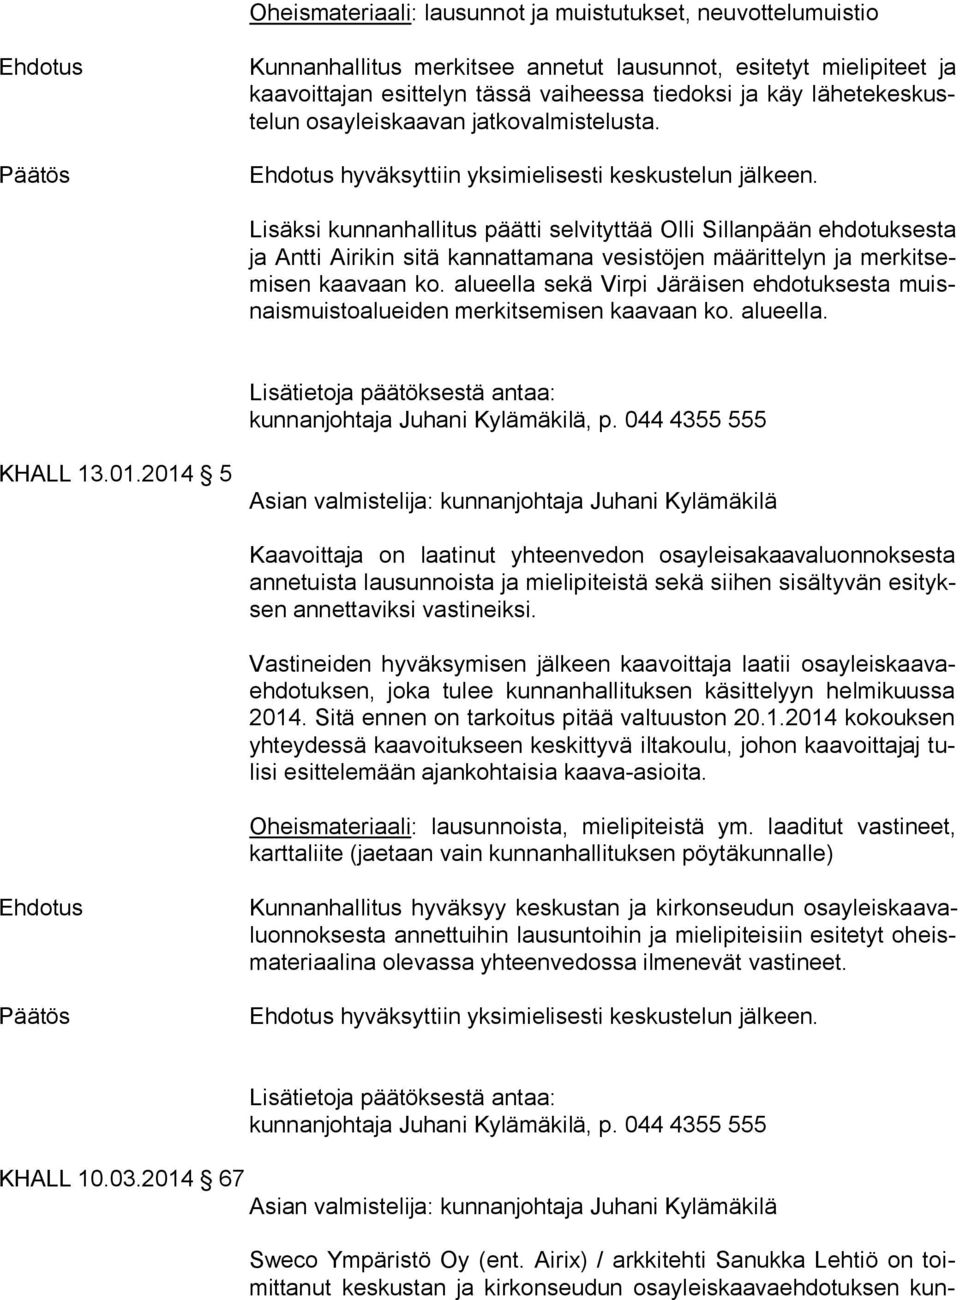 Lisäksi kunnanhallitus päätti selvityttää Olli Sillanpään ehdotuksesta ja Ant ti Airikin sitä kannattamana vesistöjen määrittelyn ja mer kit semi sen kaavaan ko.